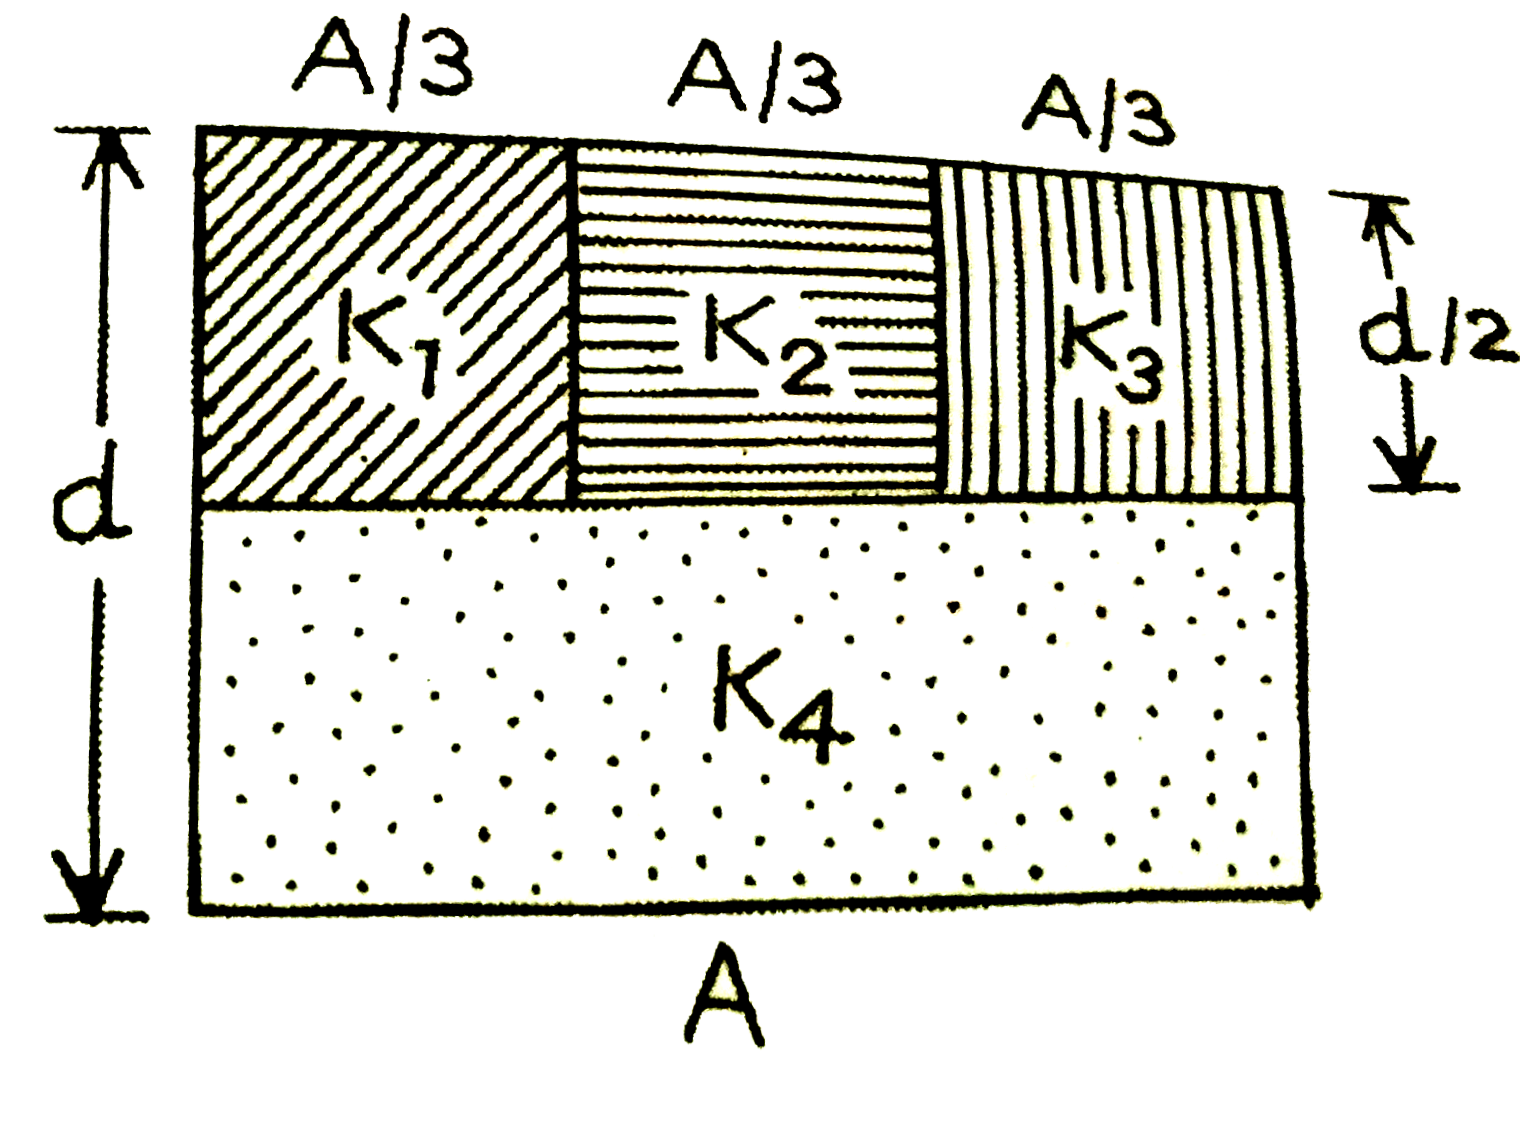 एक समांतर-प्लेट संधारित्र का क्षेत्रफल A तथा धारिता C  है। इसकी दो प्लेटो के बीच पृथकन (दूरी) d है।  इसमें क्रमश: K(1), K(2), K(3) तथा K(4) परावैद्युतांक के चार परावैद्युत पदार्थ आरेख में दर्शाये गये अनुसार, भरे गये है।  यदि इन चारो परावैद्युत पदार्थो के स्थान पर इस संधारित्र में K परावैद्युतांक का केवल एक परावैद्युतांक पदार्थ भरा जाये ताकि उसकी धारिता C हो, तो K का मान होगा: